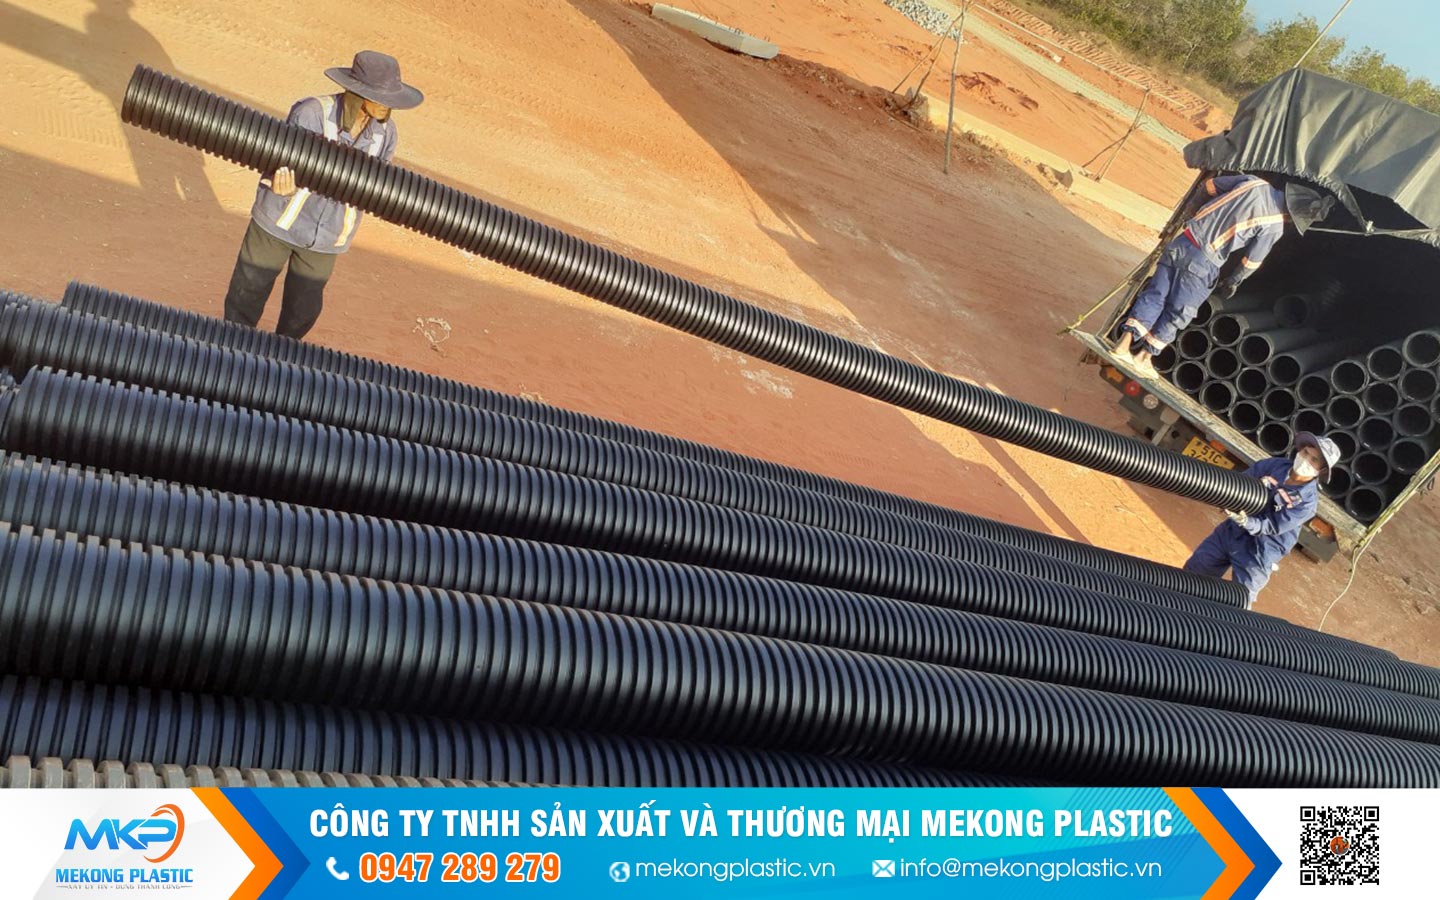 Ứng dụng đa dạng của ống nhựa HDPE 2 Vách- Mekong Plastic